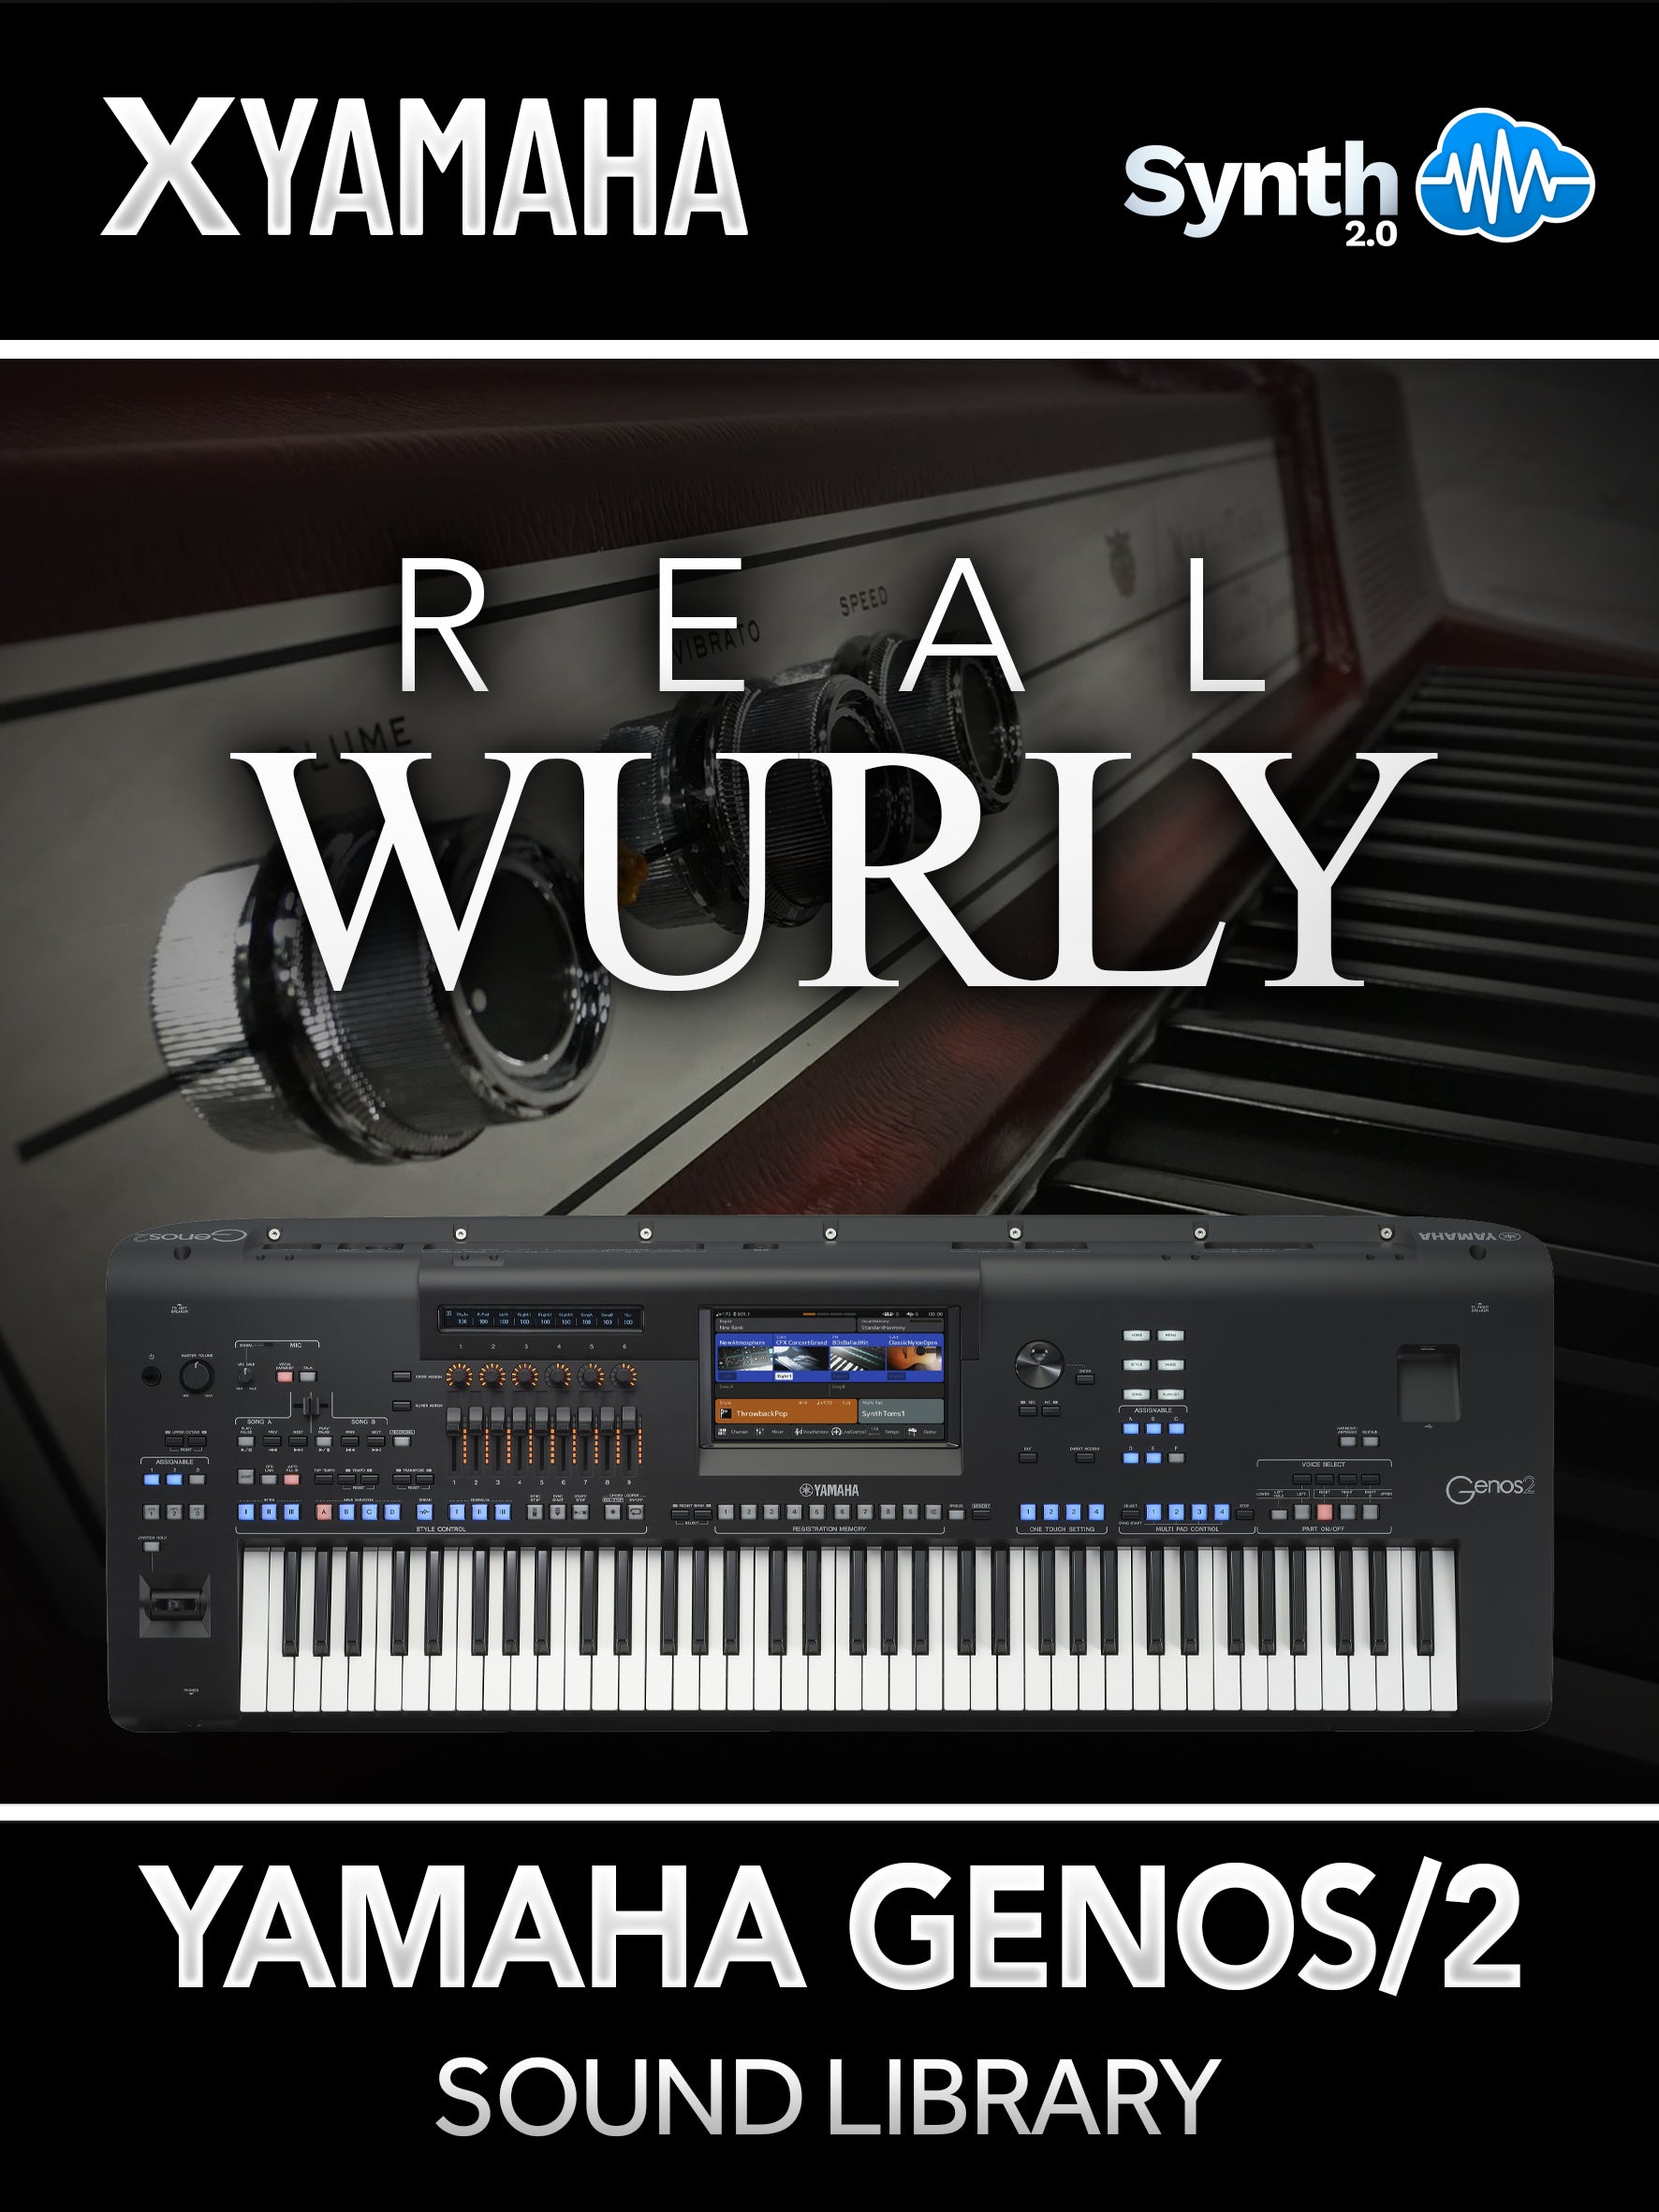 ASL042 - Real Wurly - Yamaha GENOS / 2 ( 10 programs )